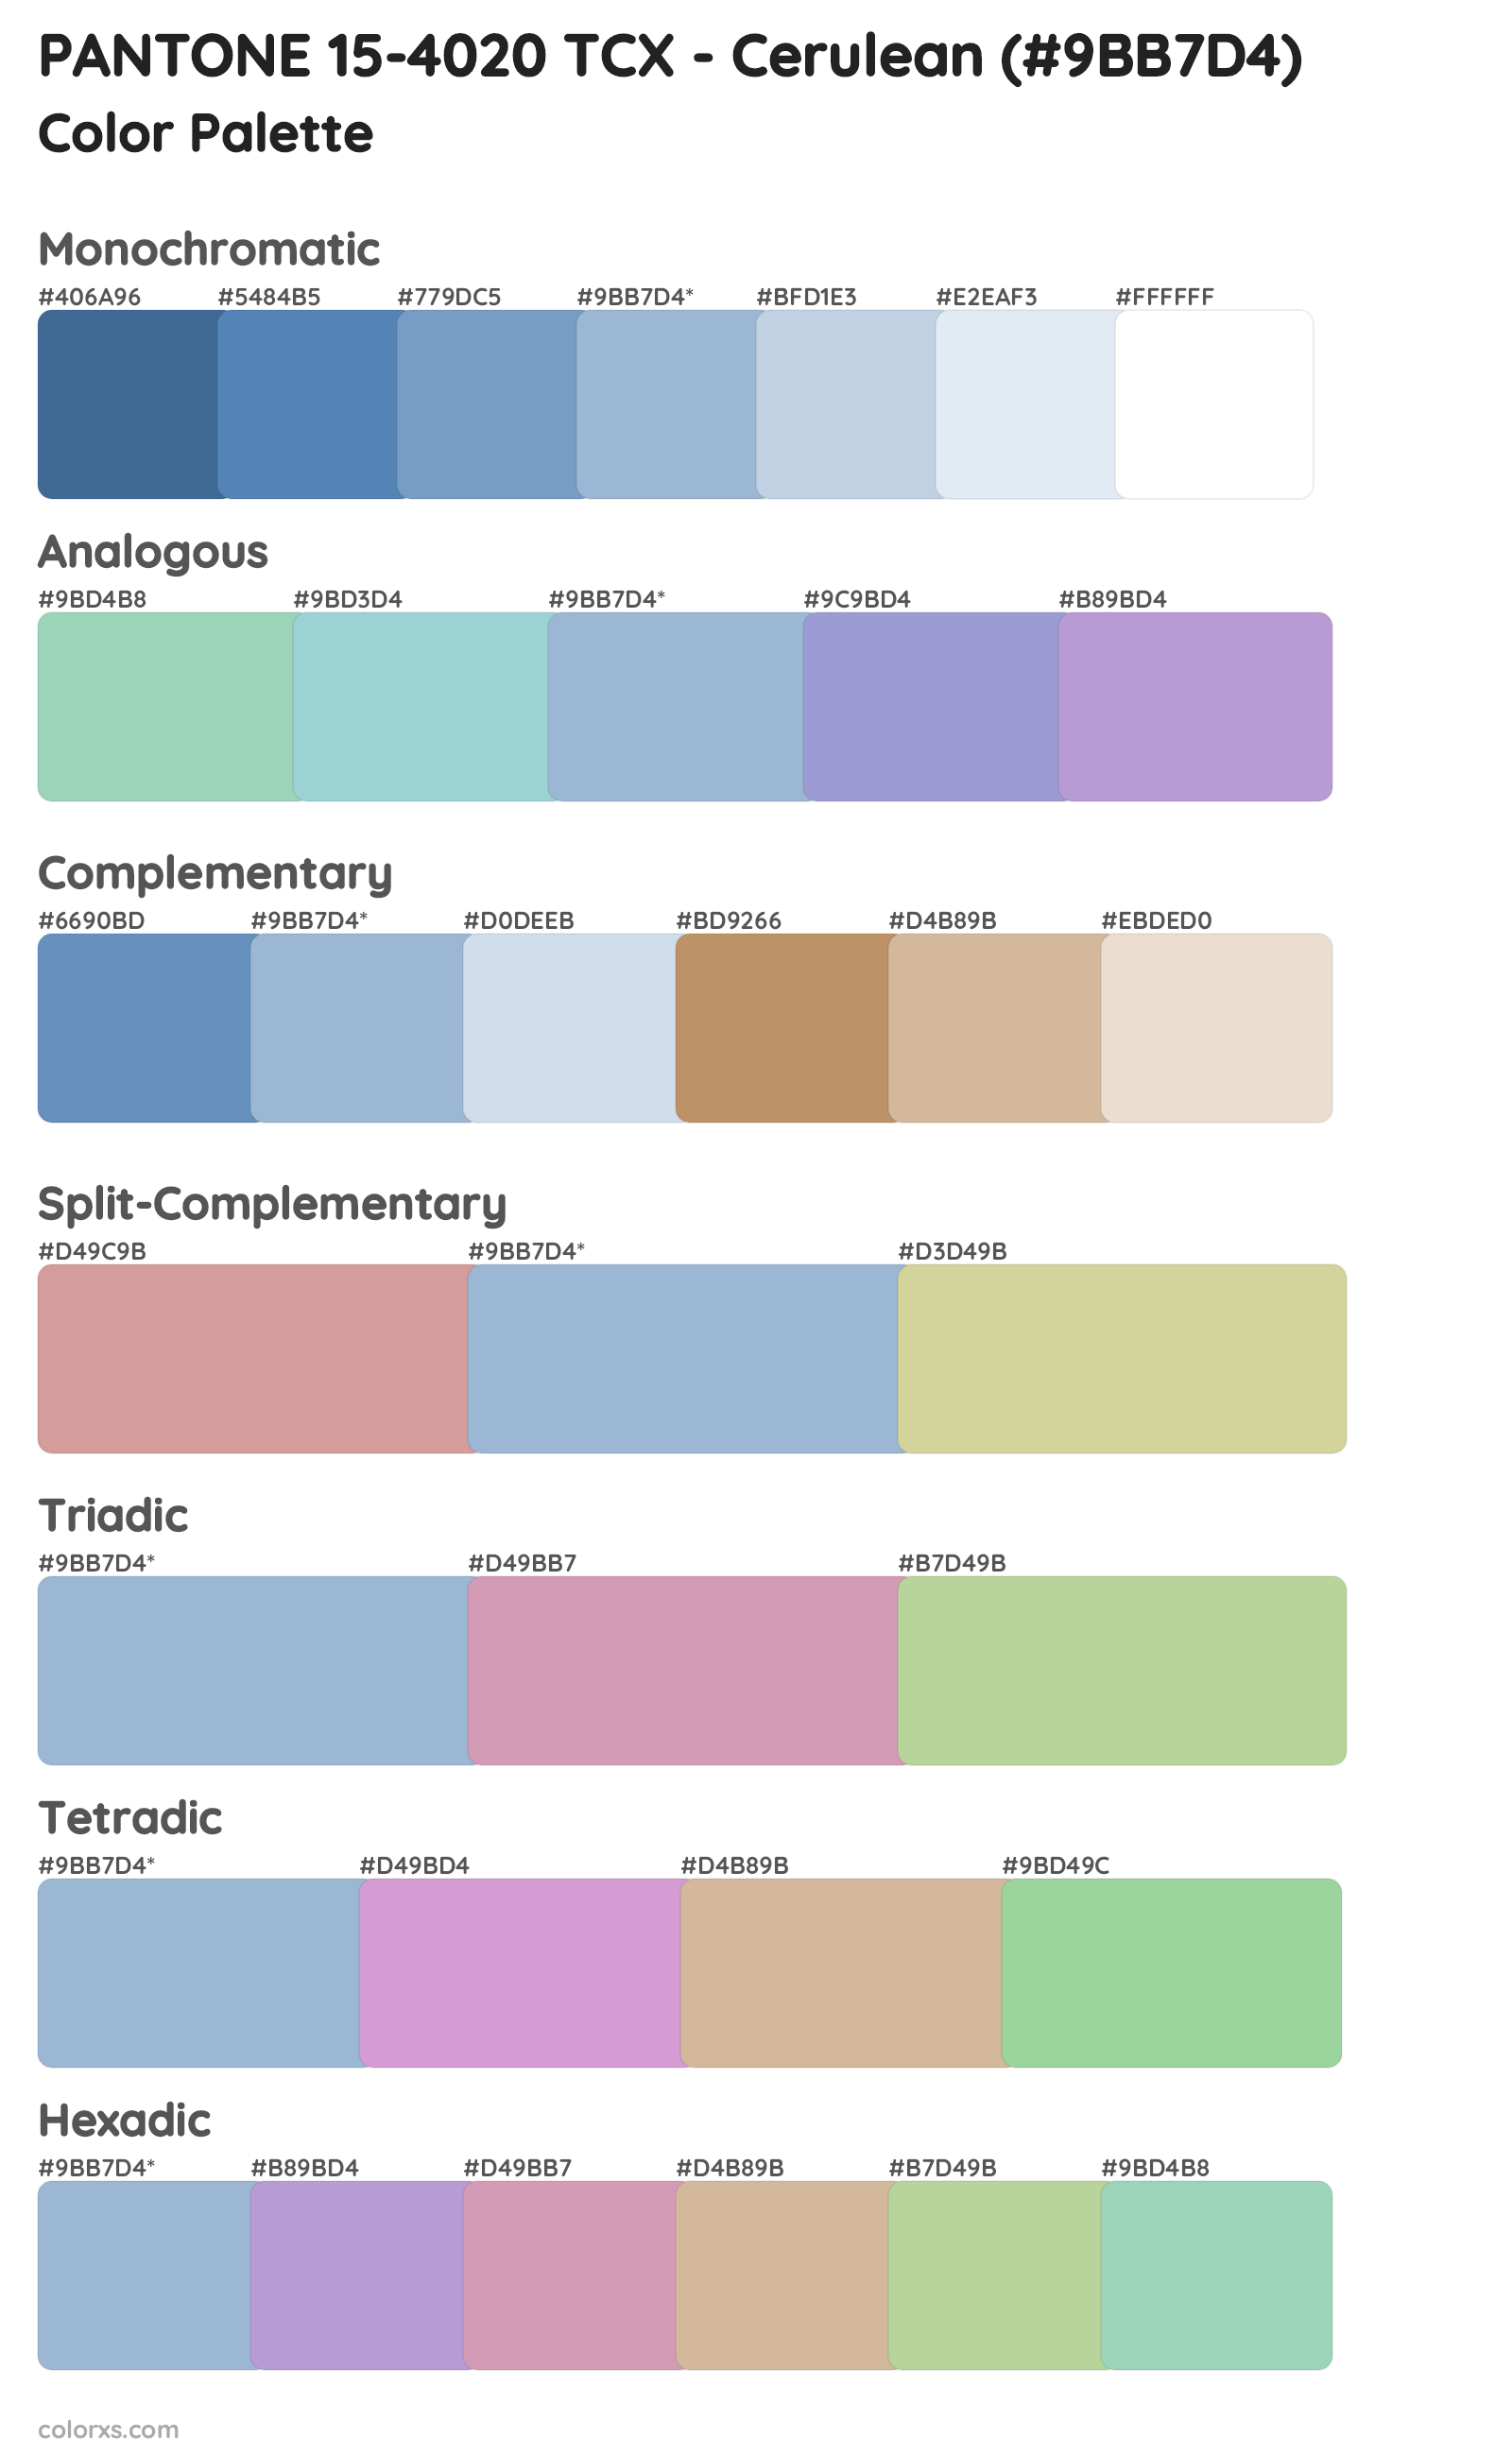 PANTONE 15-4020 TCX - Cerulean Color Scheme Palettes